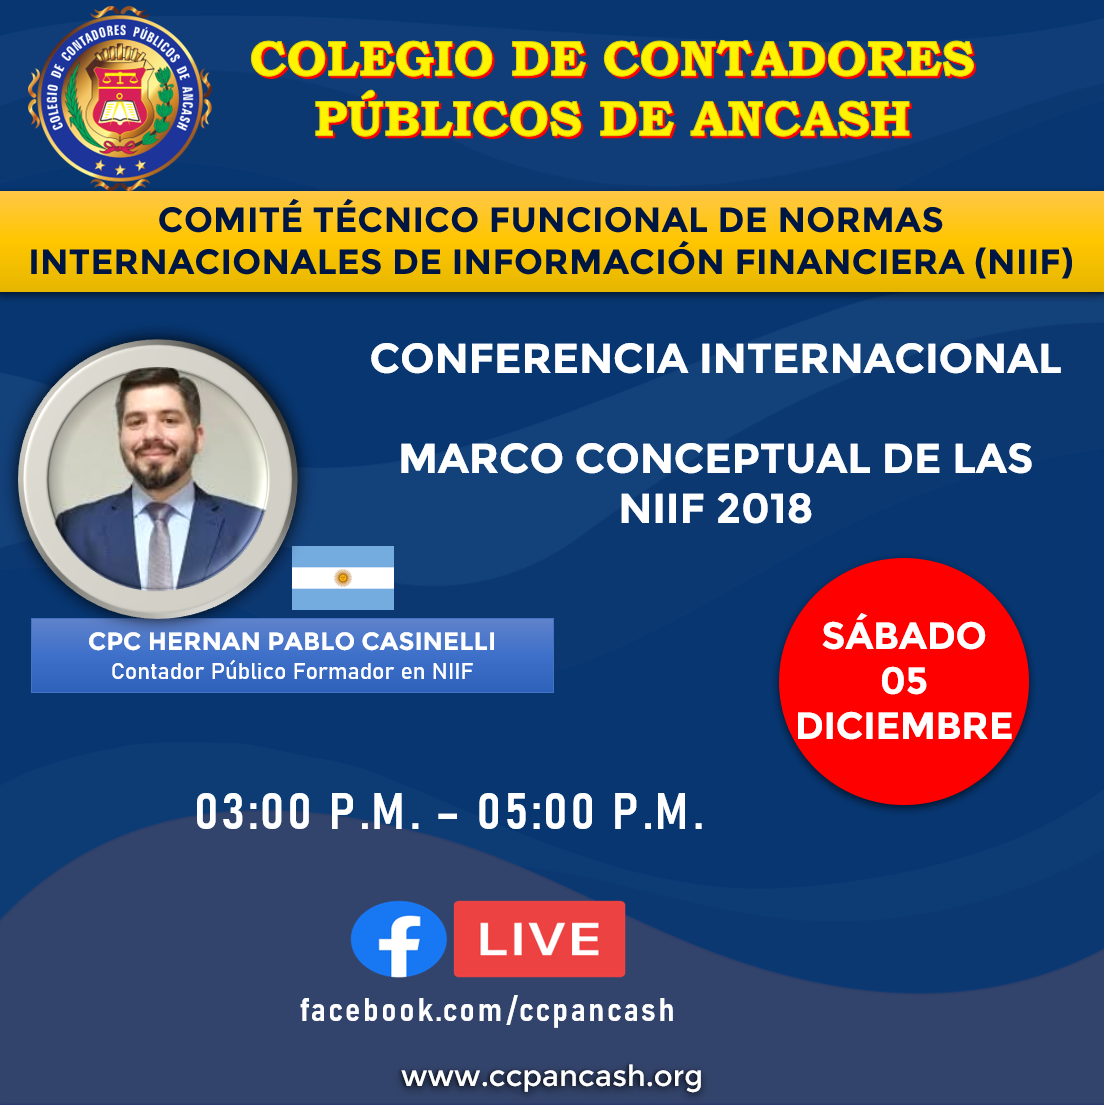 CONFERENCIA INTERNACIONAL MARCO CONCEPTUAL DE LAS NIIF 2018